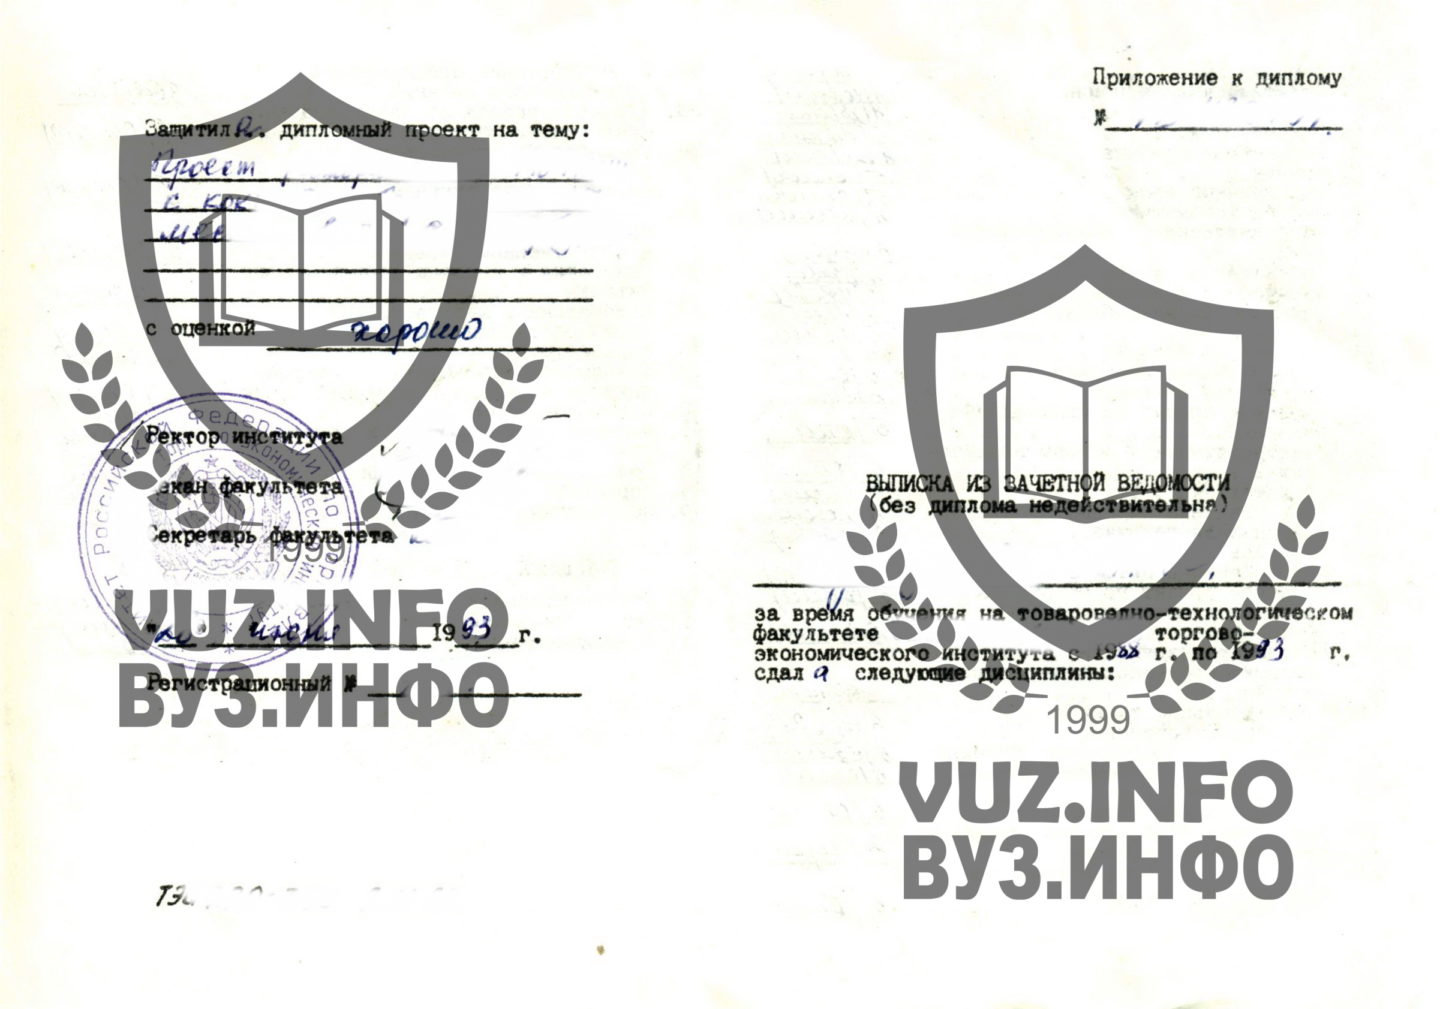 Приложение набранное на печатной машинке - технолог общественного питания (1993 год окончания)